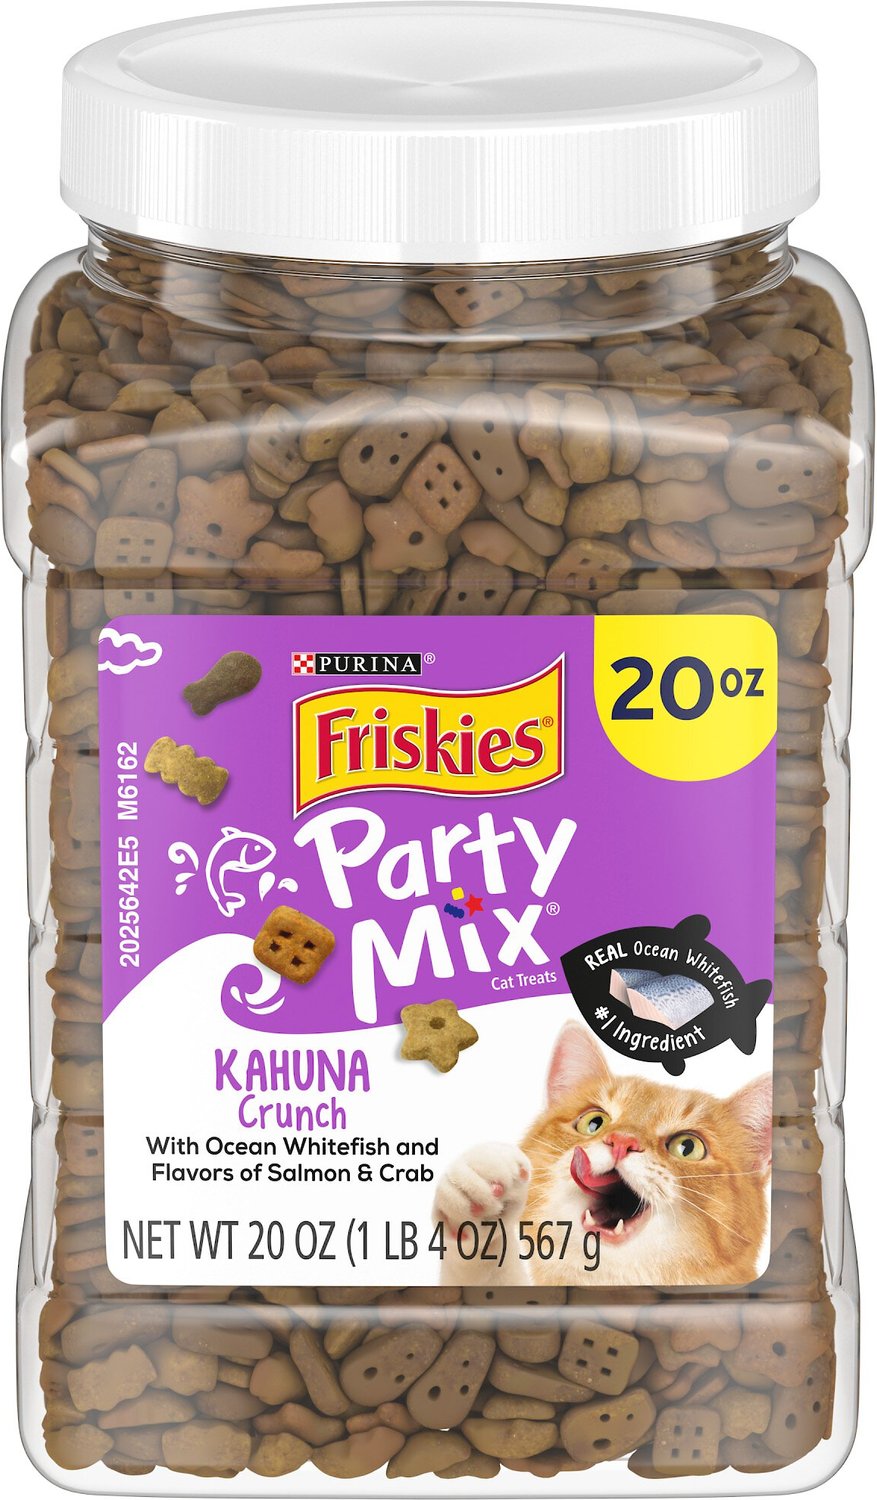 Friskies Party Mix Crunch Kahuna Cat Treats, 20oz jar